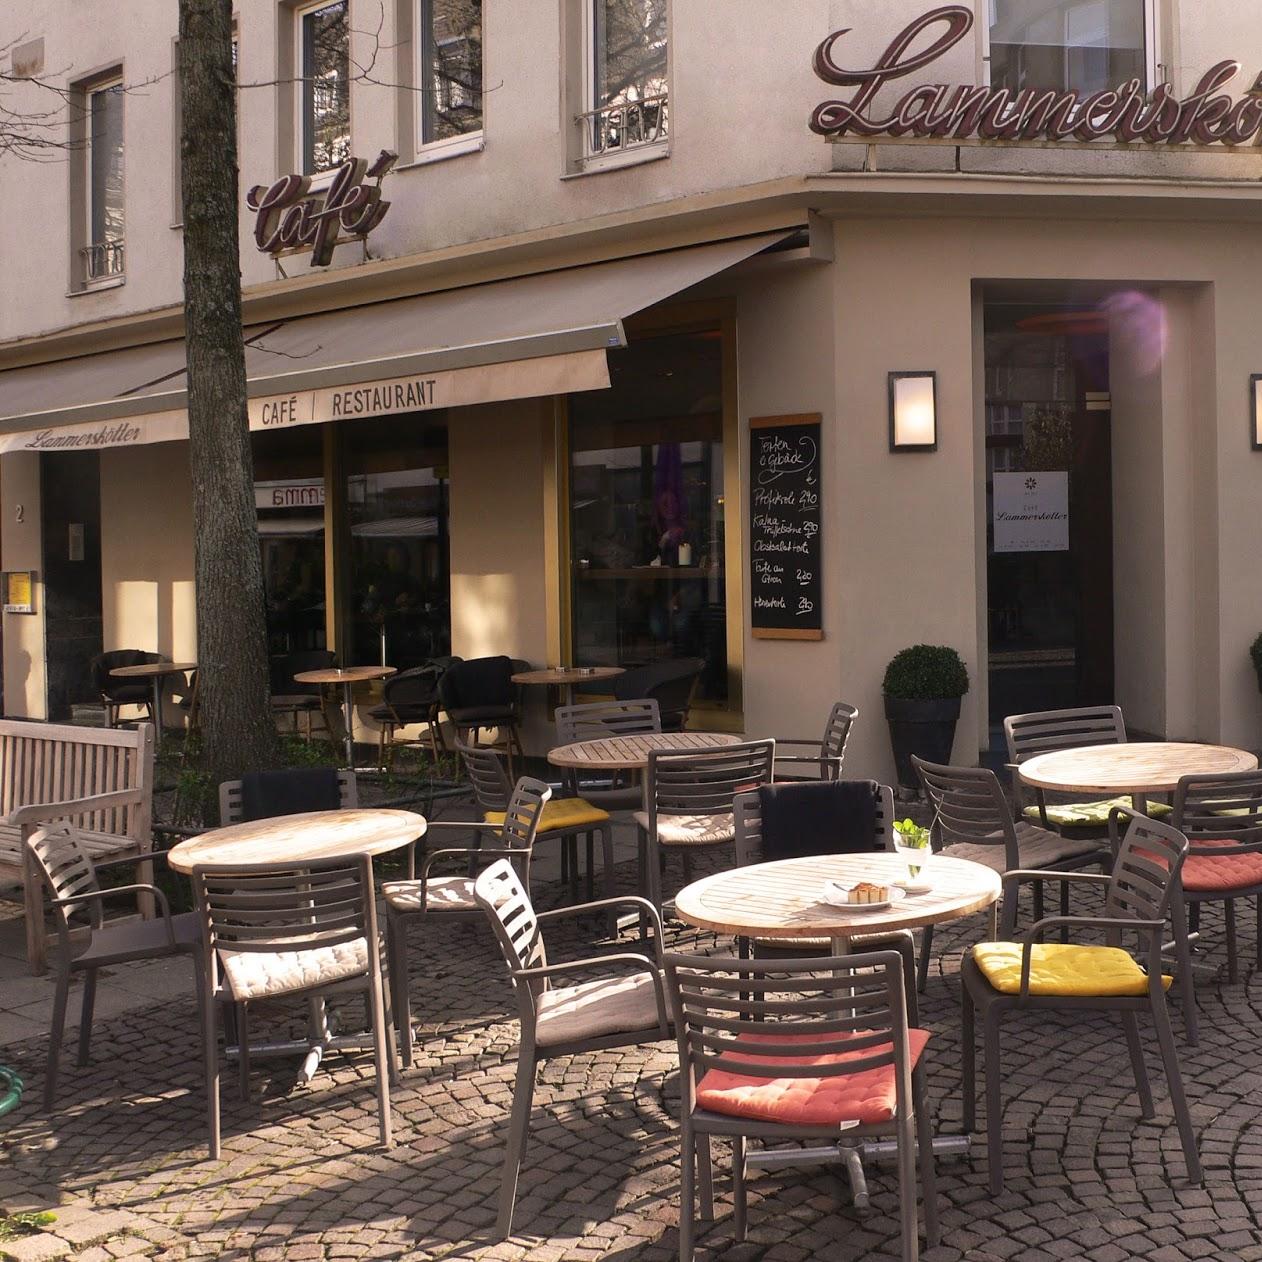 Restaurant "Lammerskötter | Café - Restaurant" in Aachen